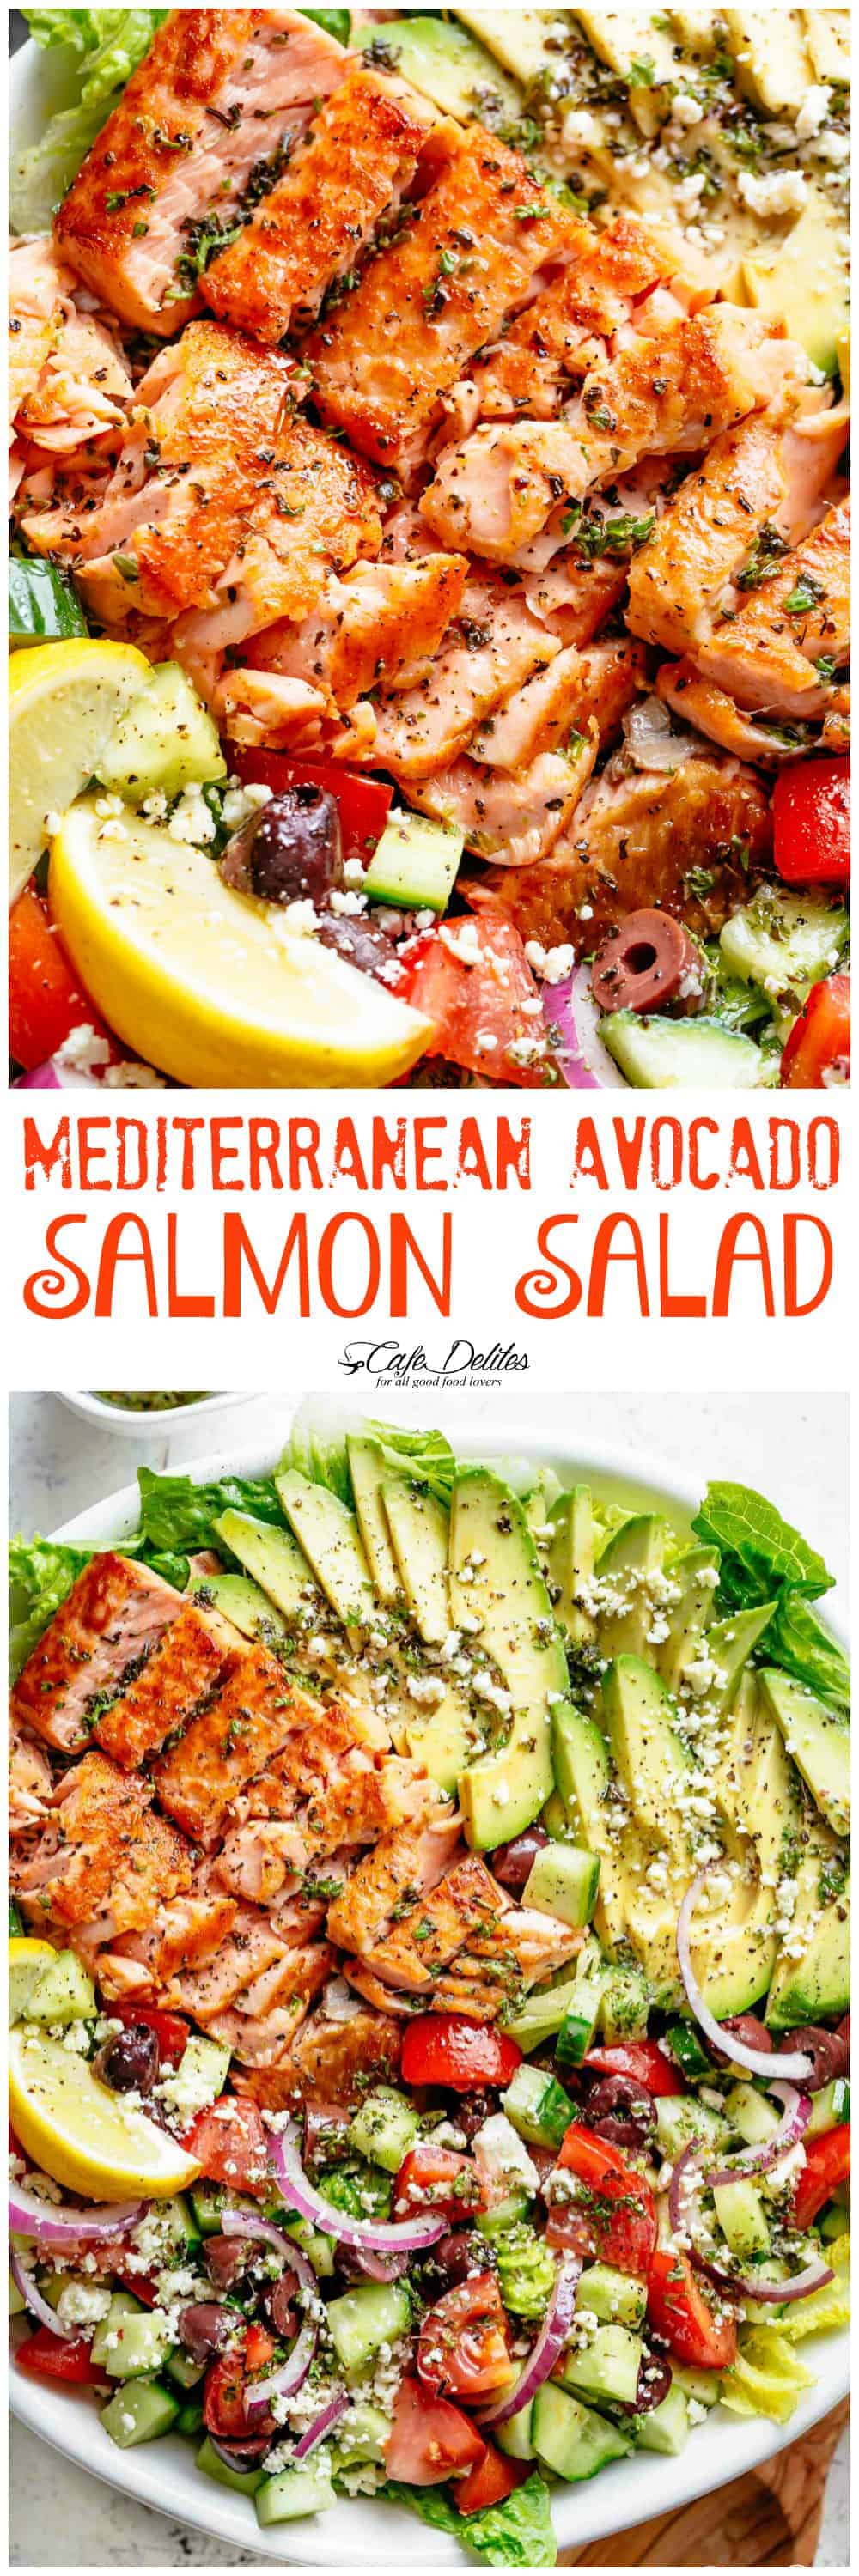 Mediterranean Avocado Salmon Salad - Cafe Delites